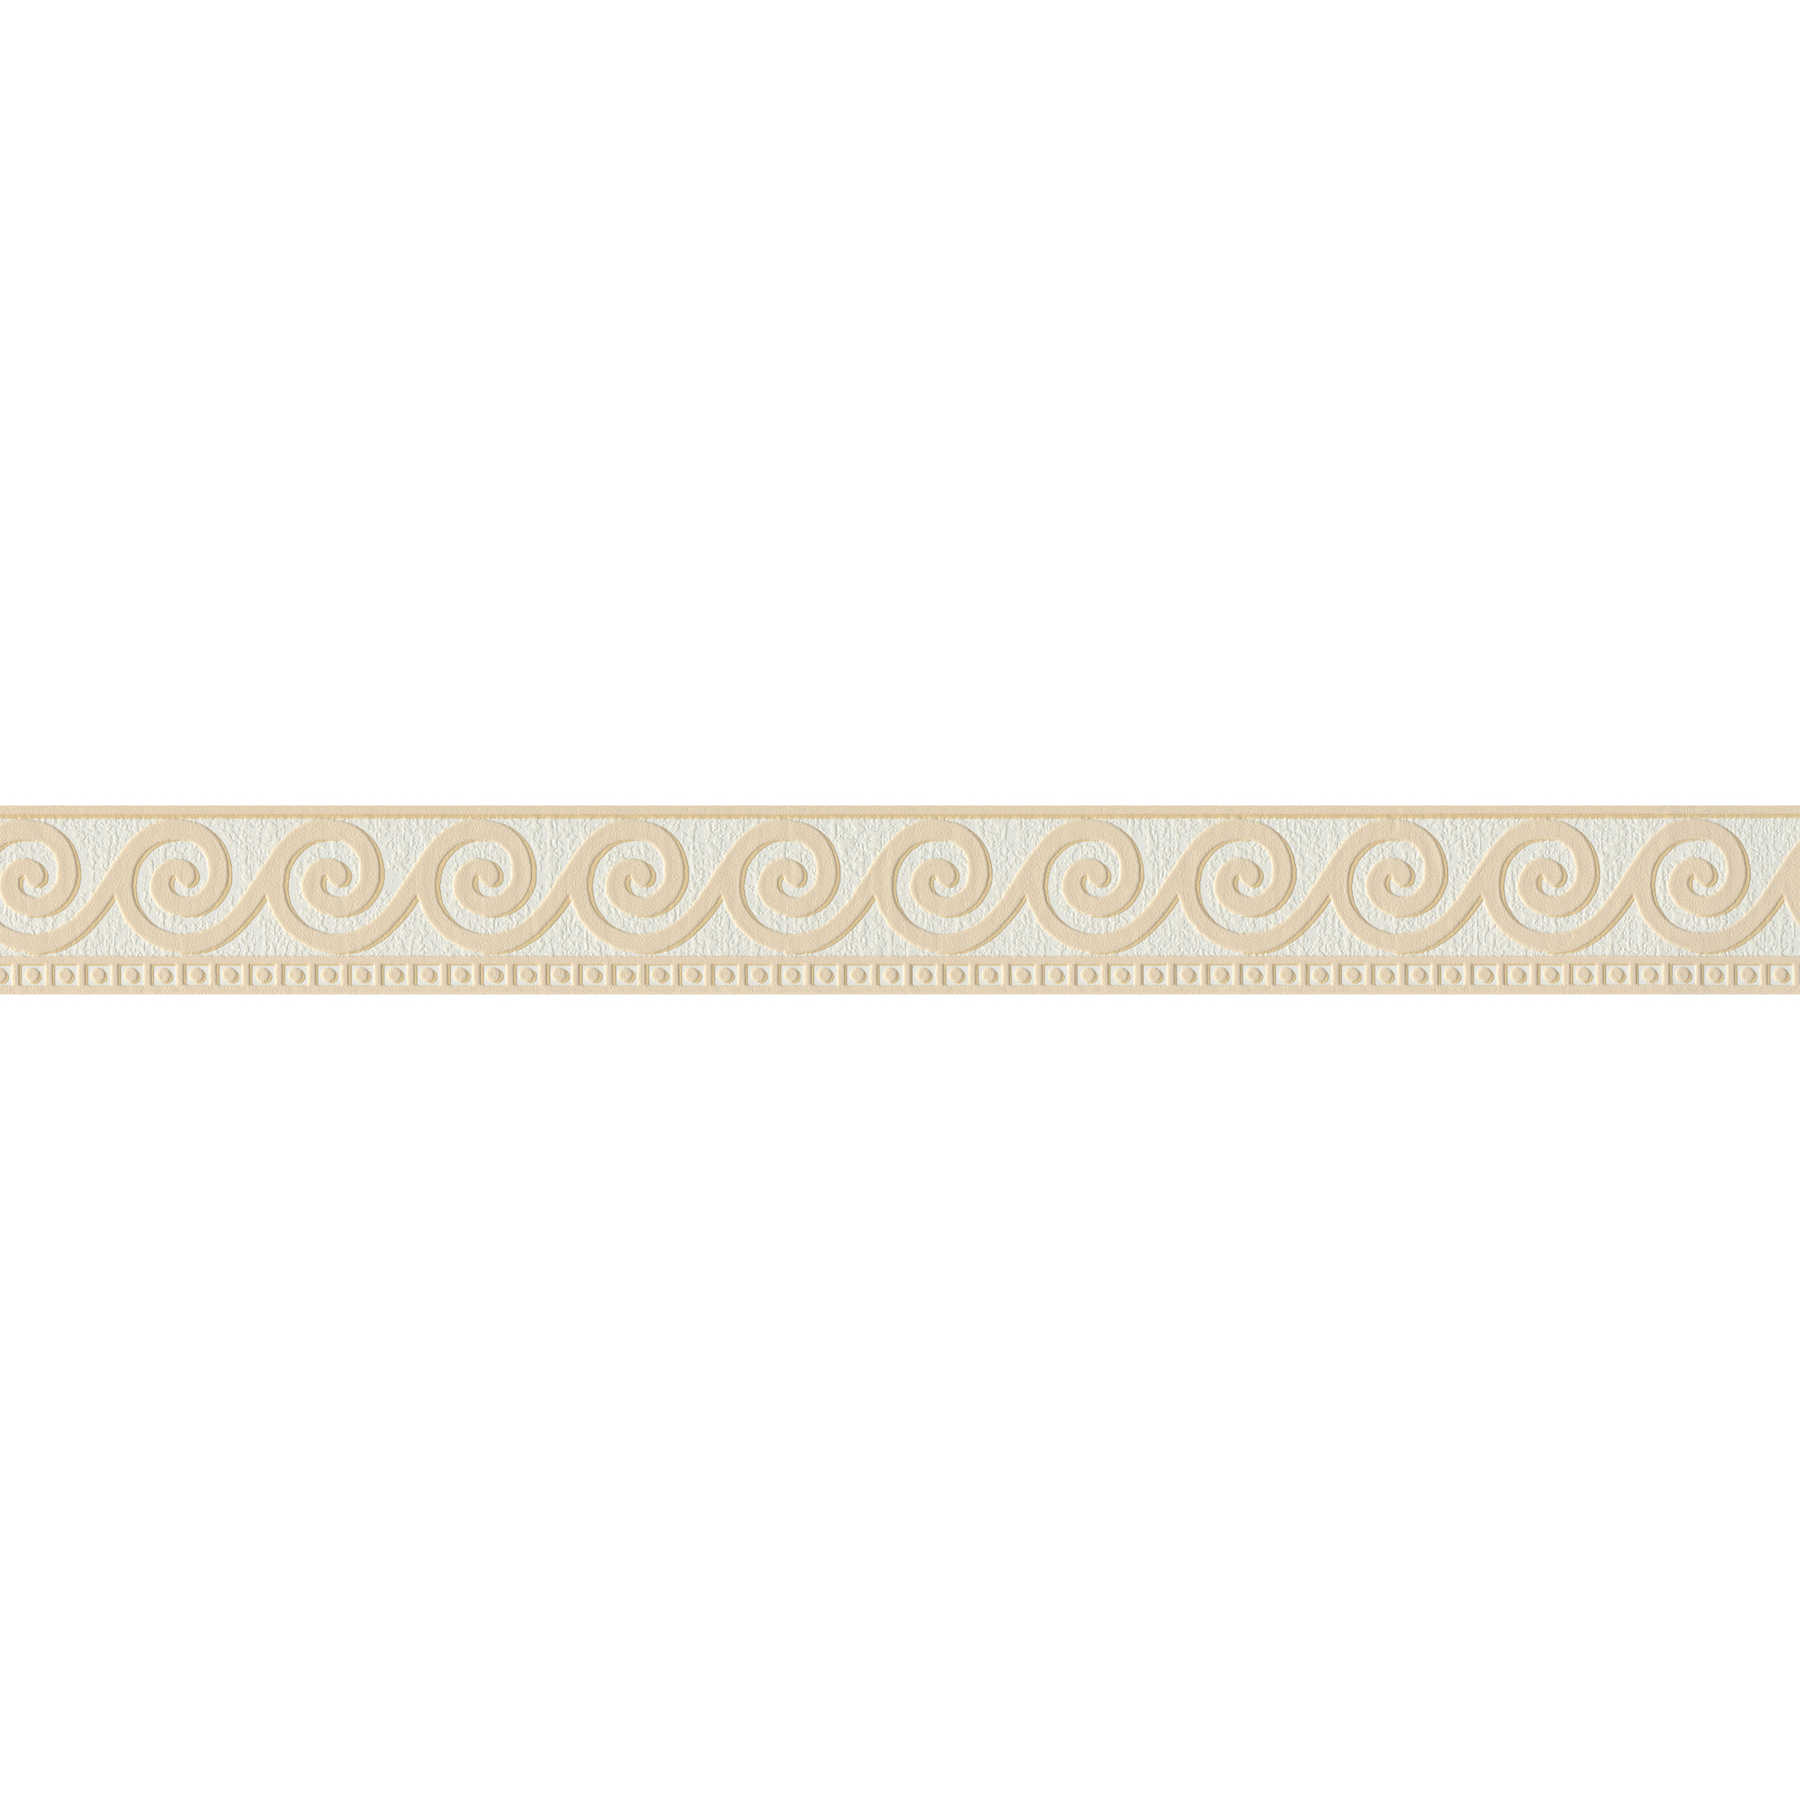 Bordo ornamentale a meandro strutturato - Beige, bianco
